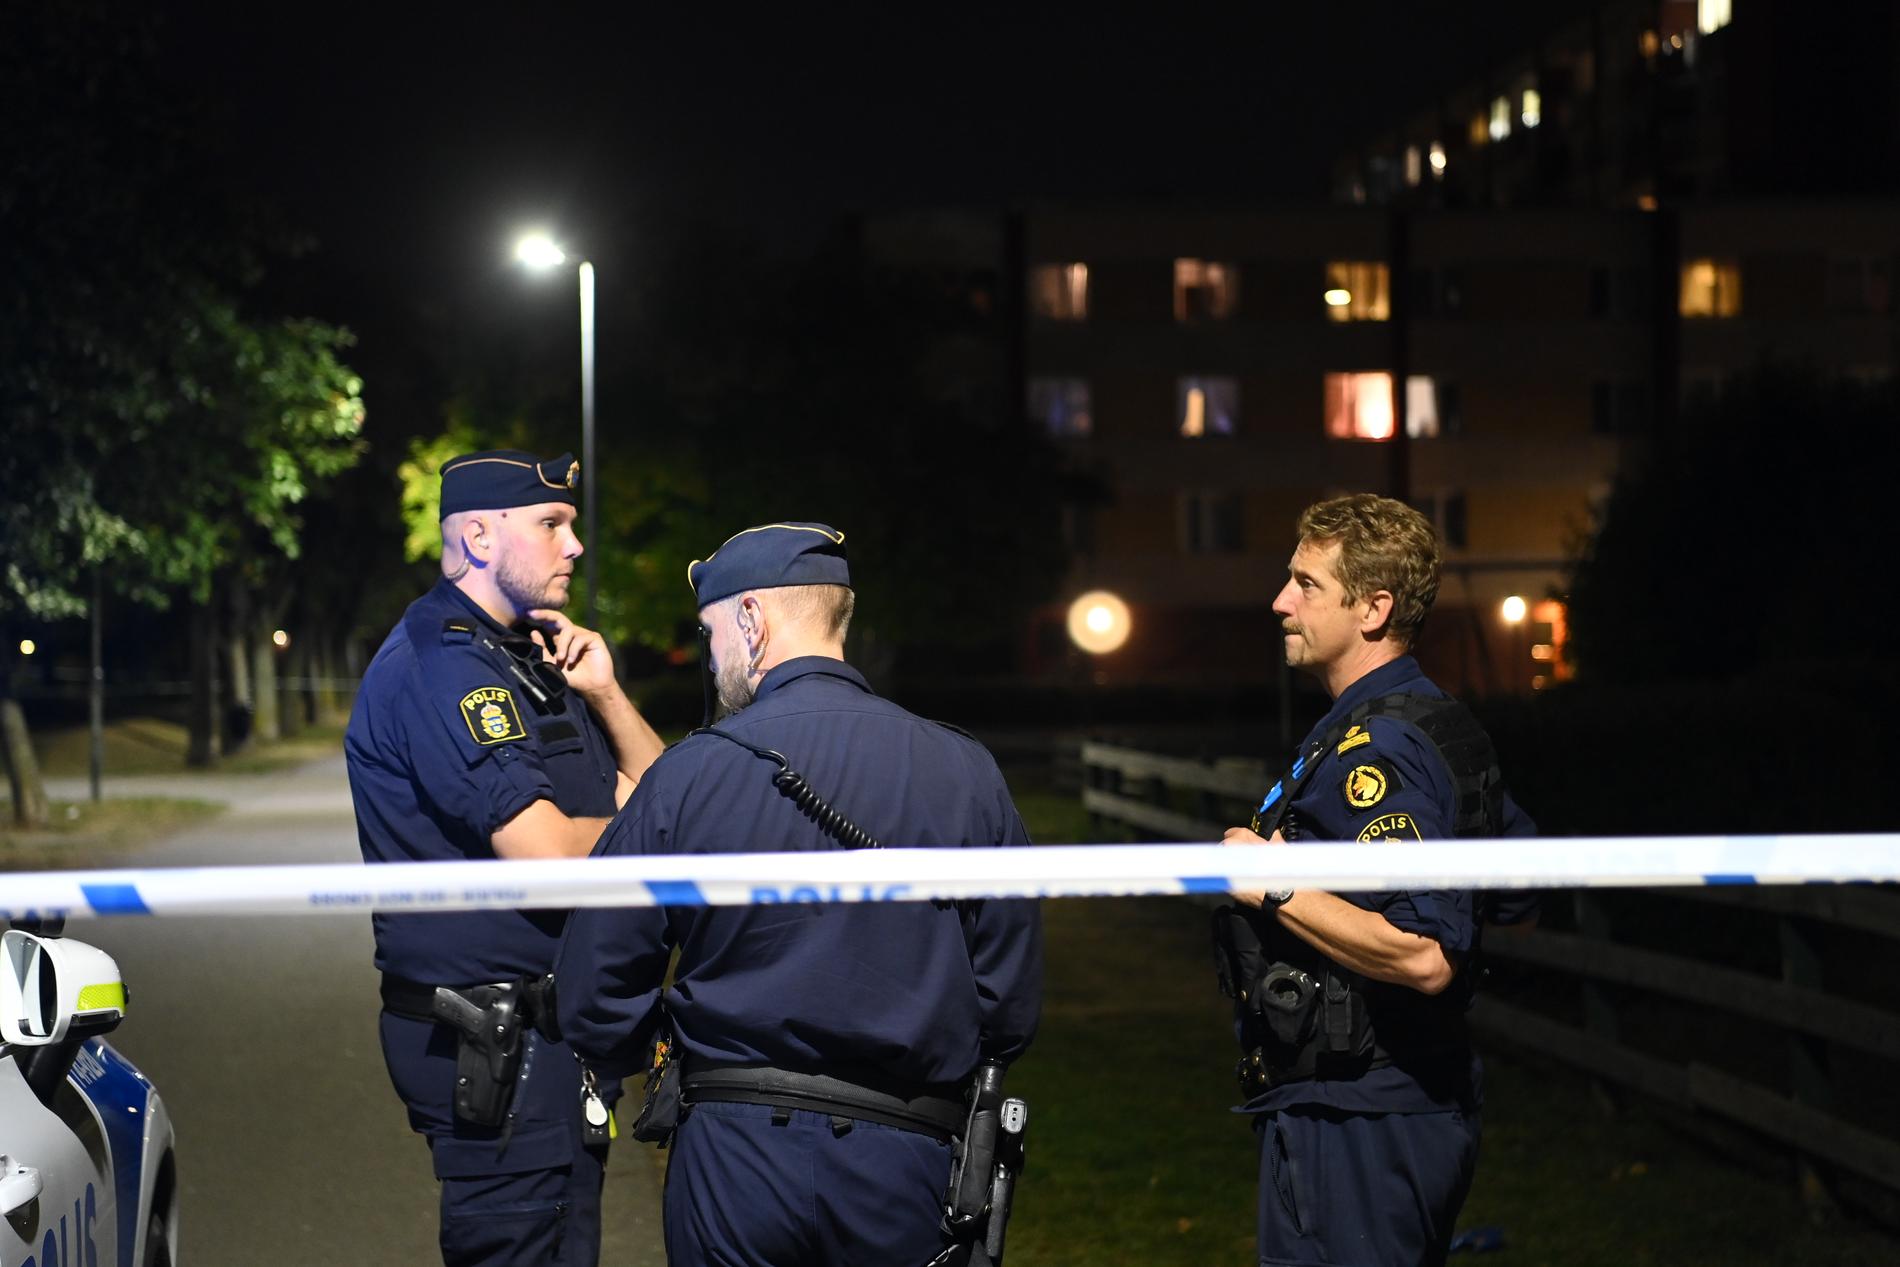 Enligt uppgifter till Aftonbladet hade polisen fått en varning om att en skjutning var nära förestående dagen före skotten.